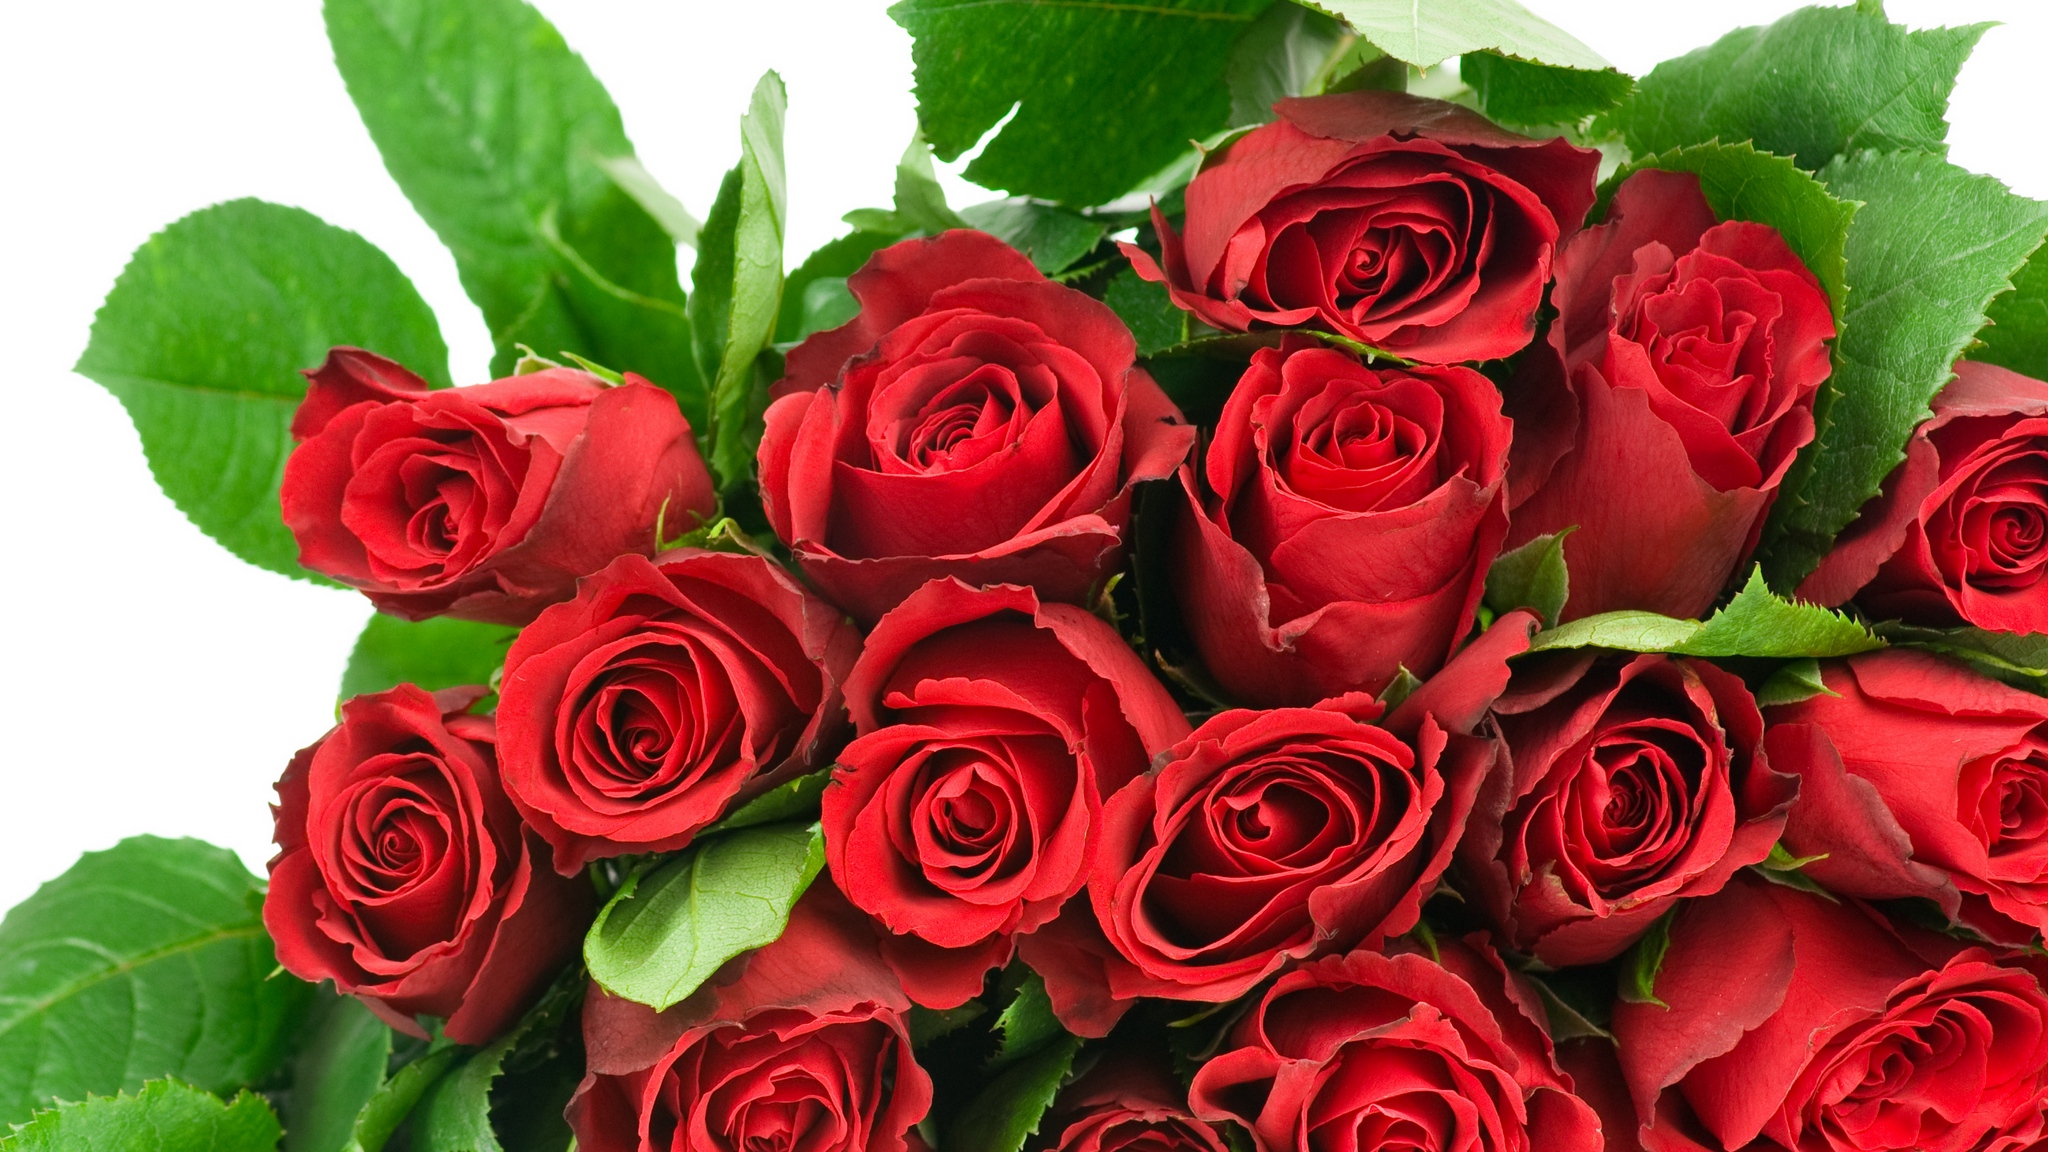 Картинка с прекрасными 11 розами